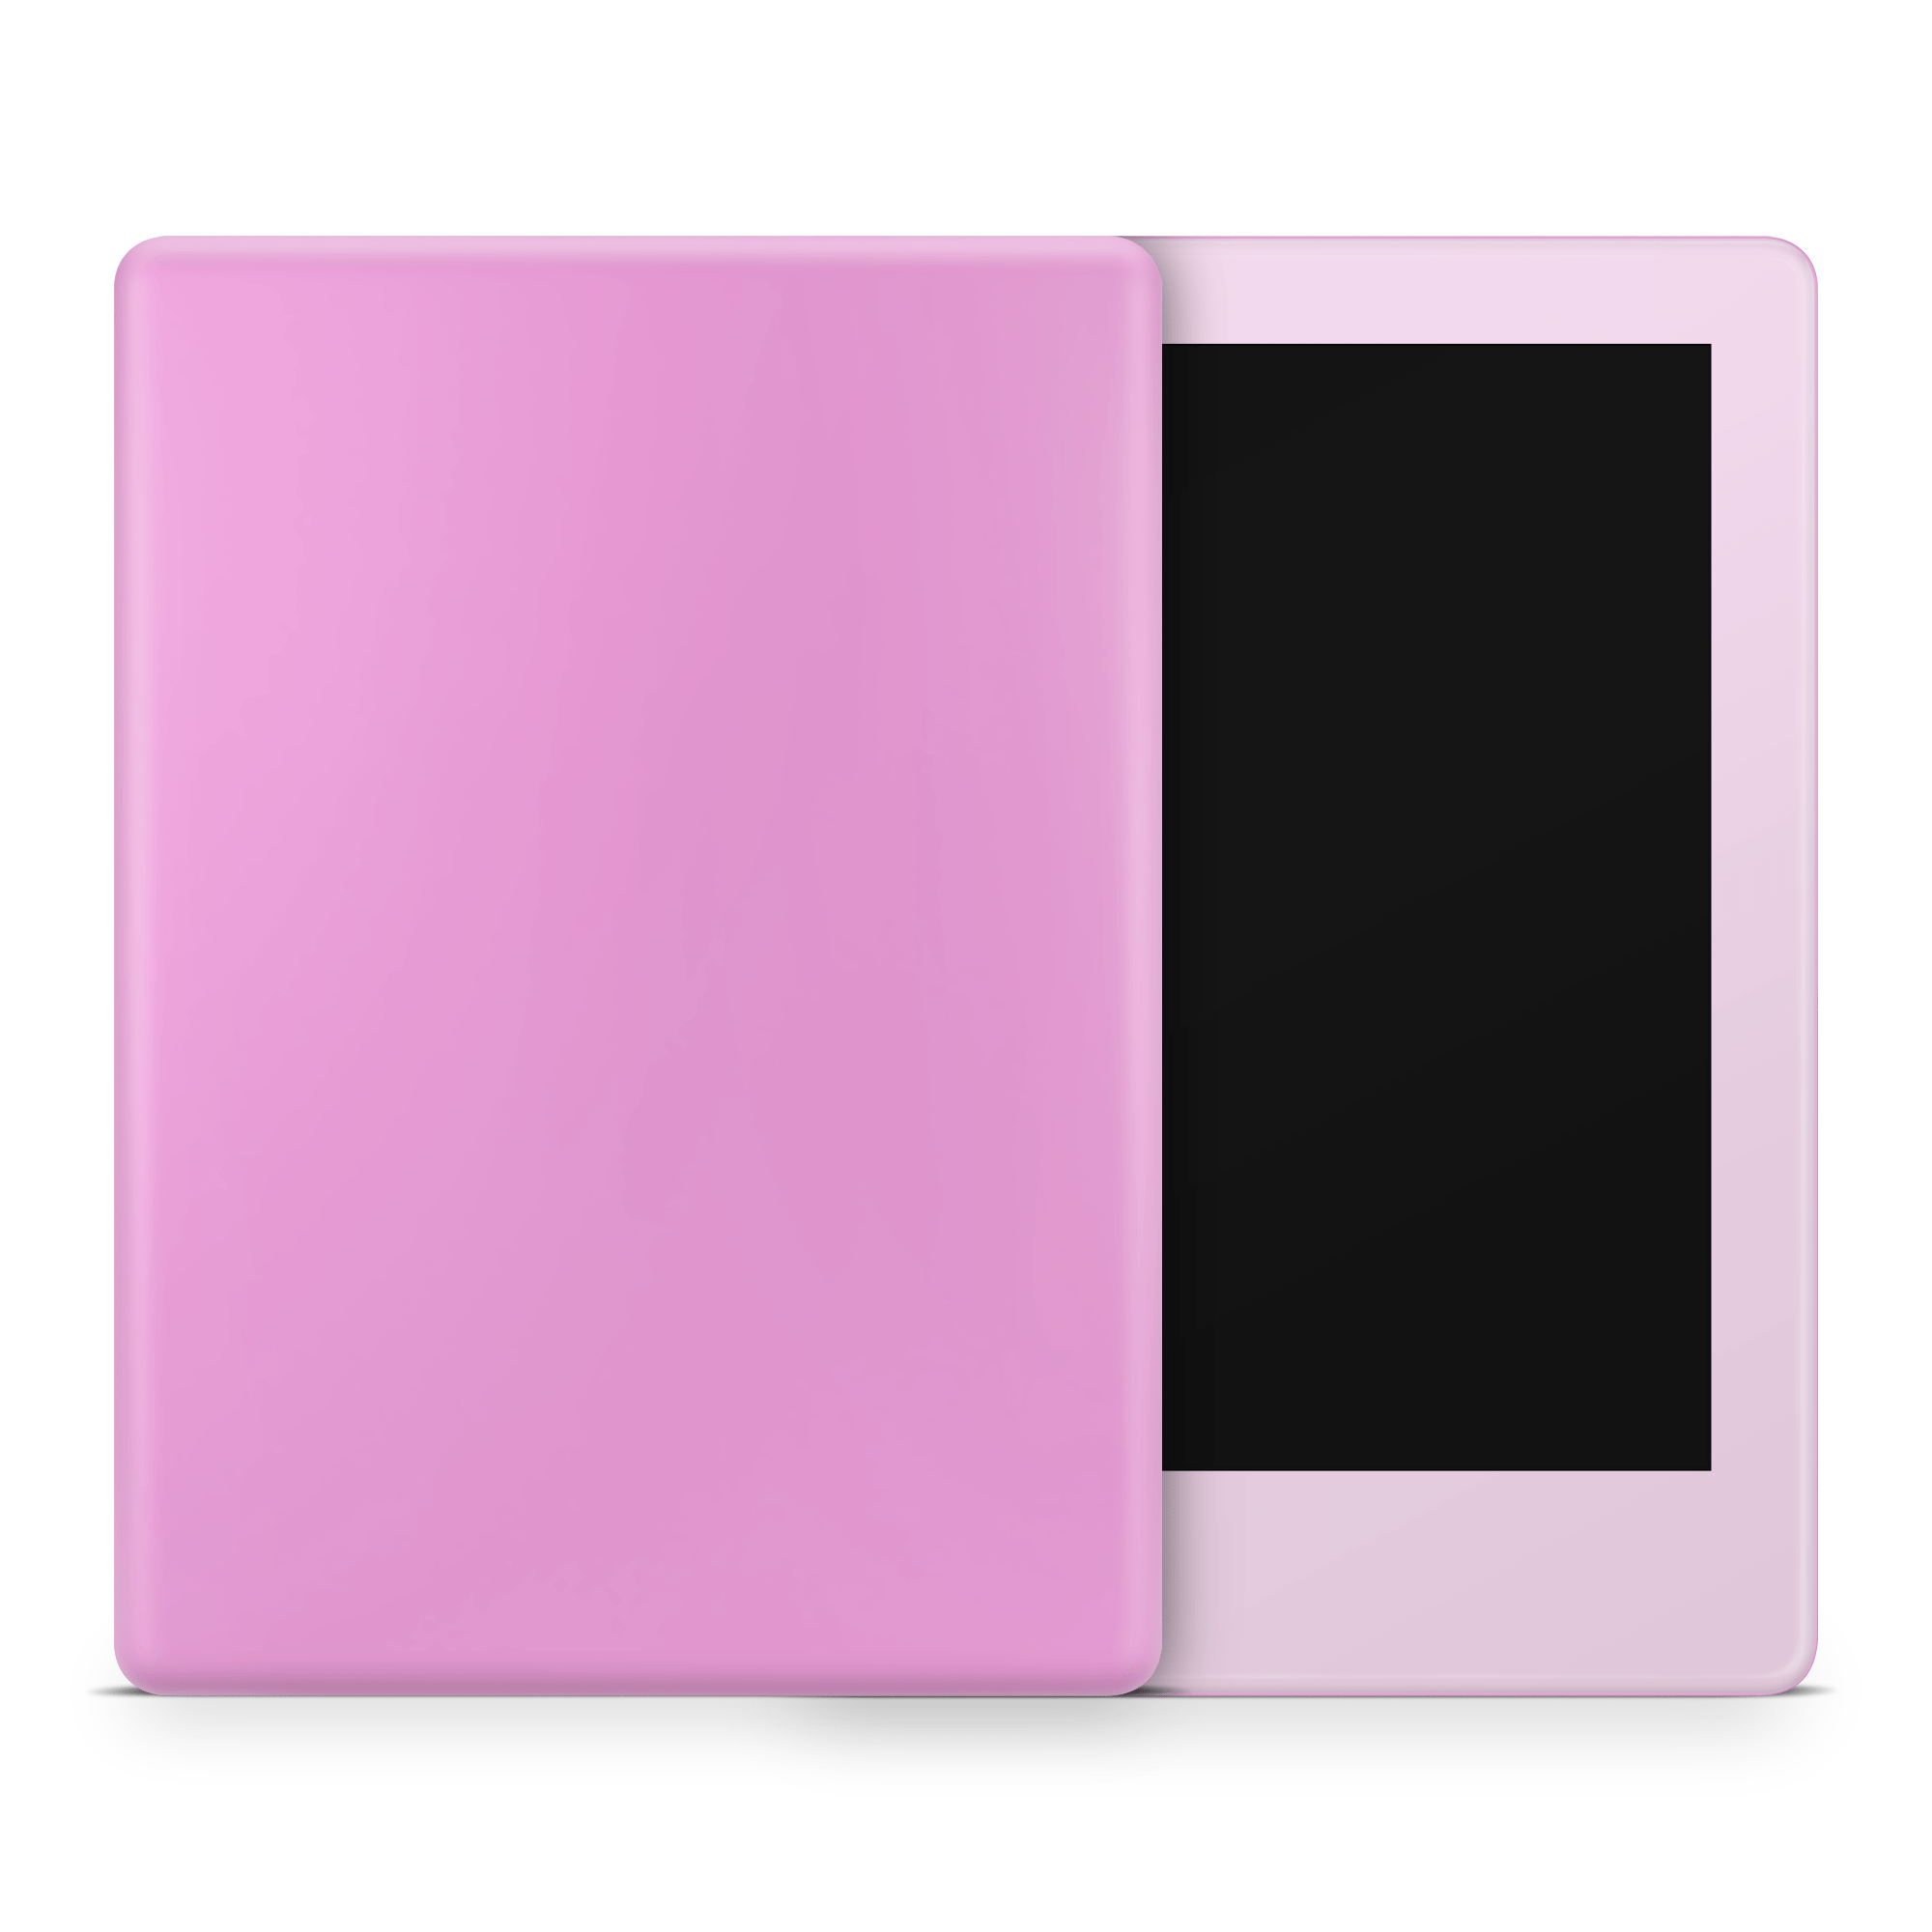 Shades of Rose Amazon Kindle Skins